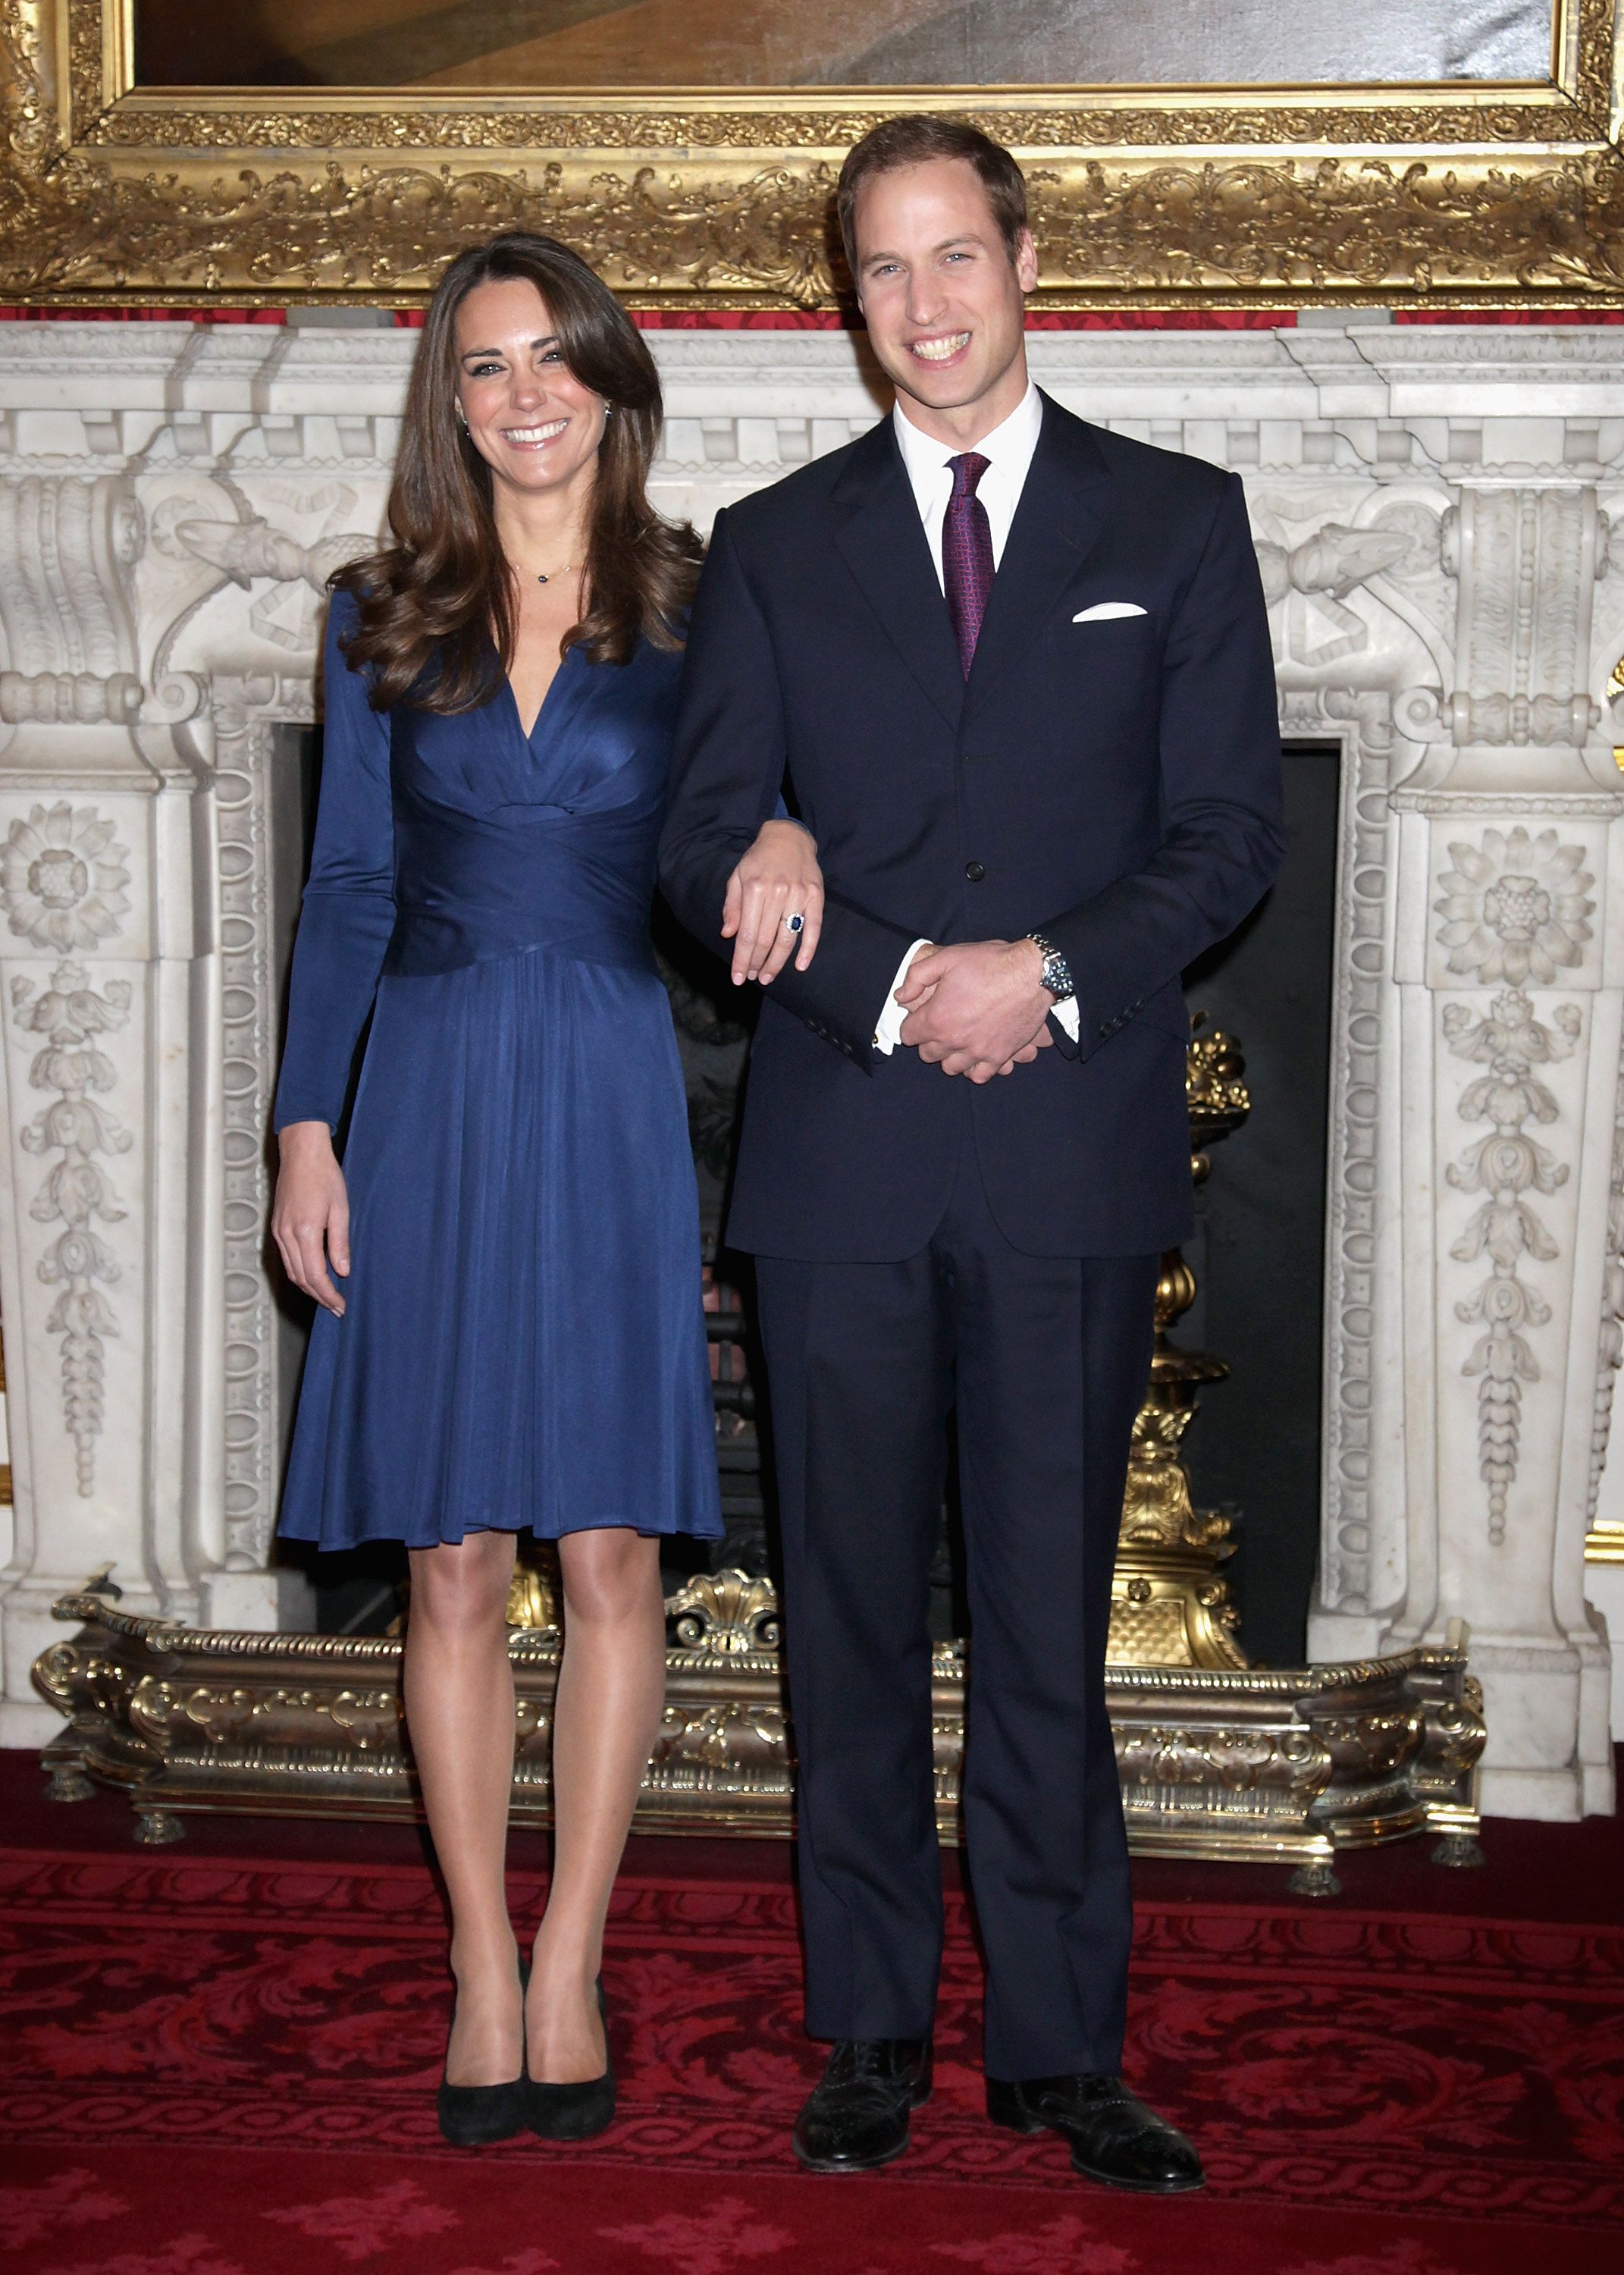 Kate Middleton und Prinz William posieren in den Staatsgemächern des St. James Palace am 16. November 2010 in London, England | Quelle: Getty Images